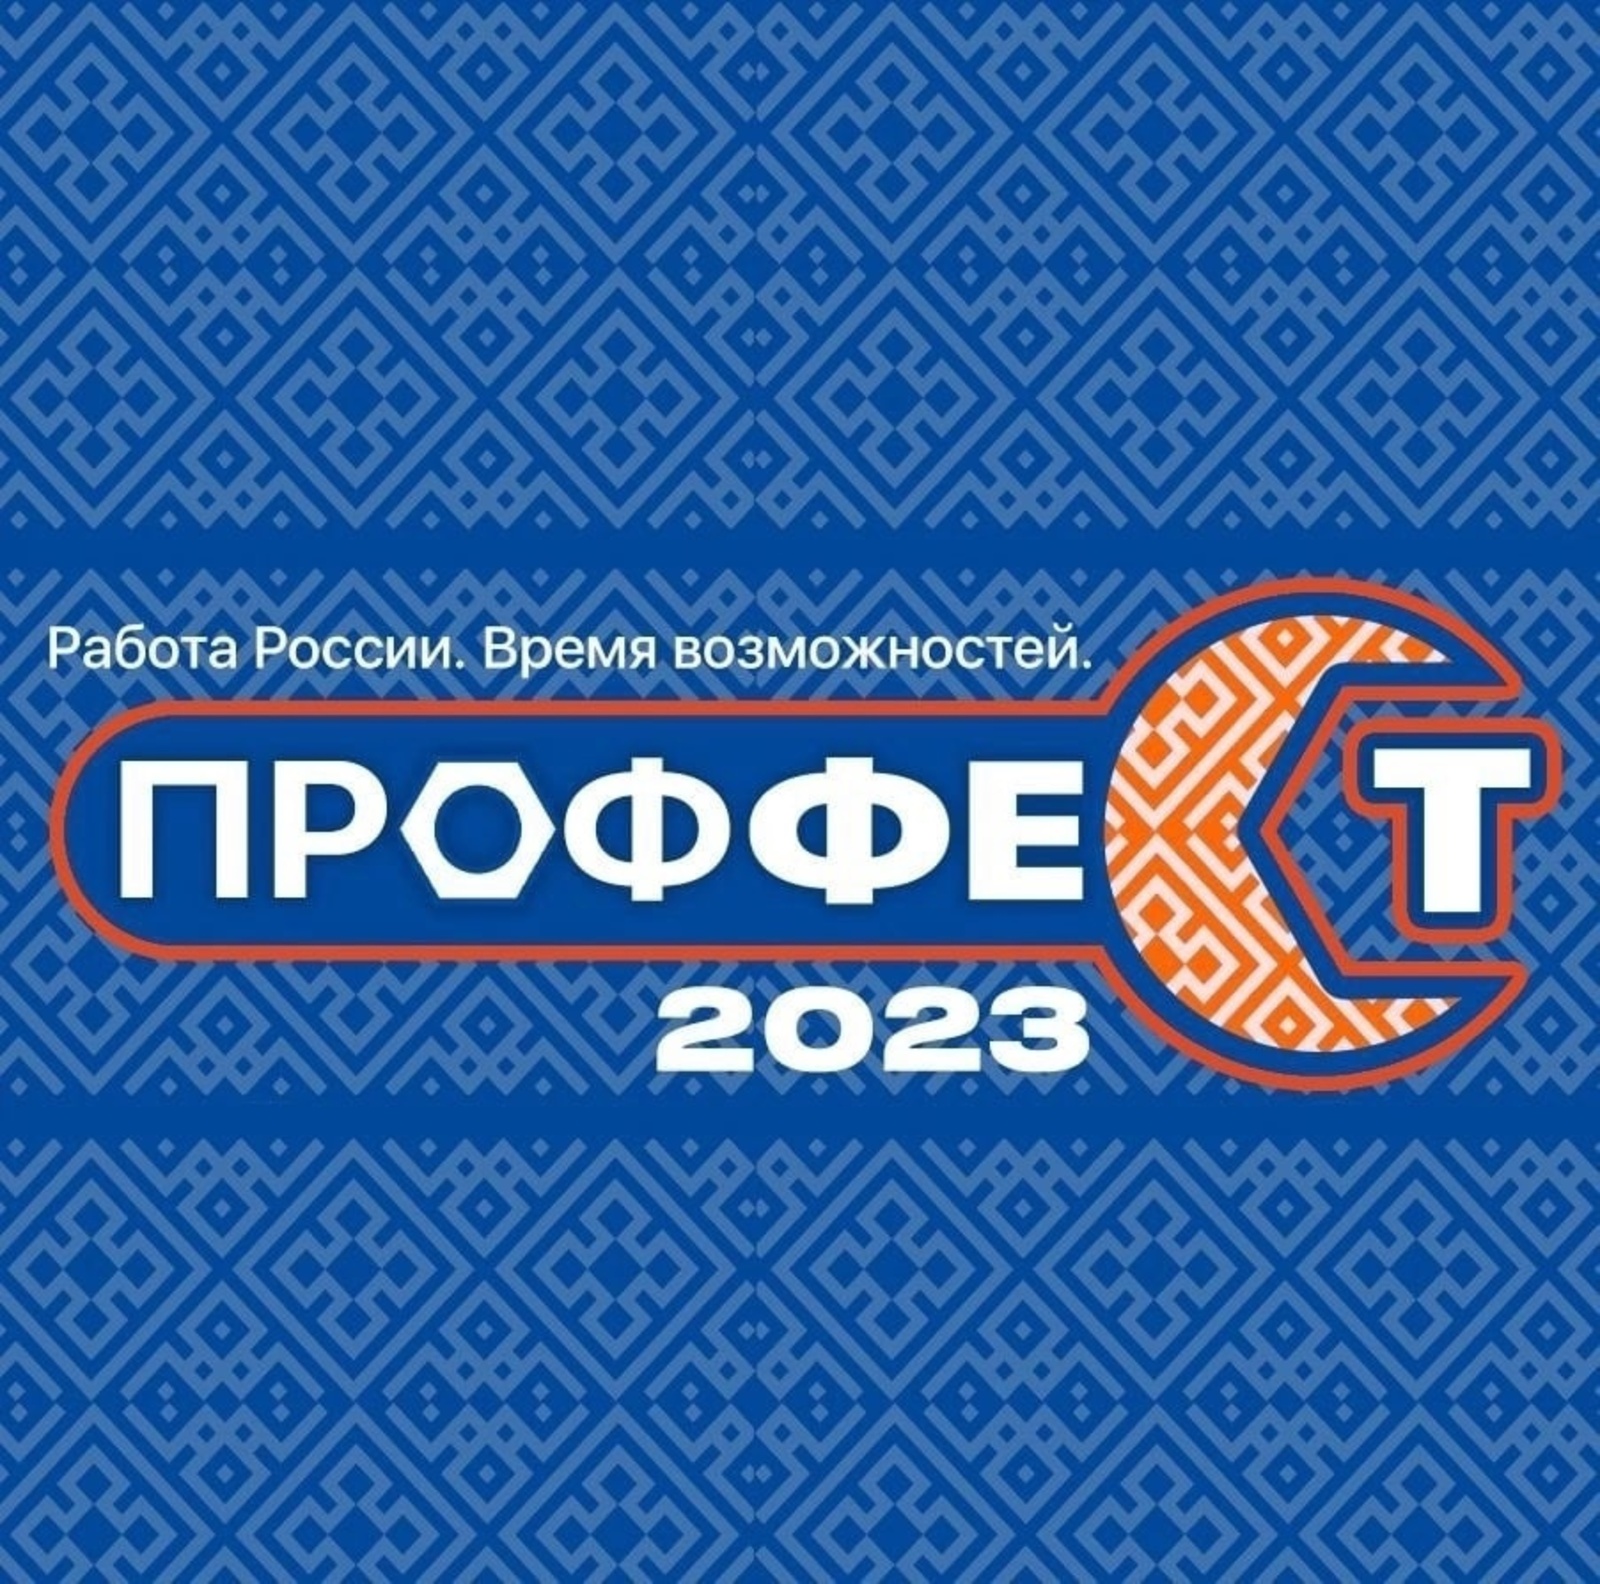 В Башкортостане открыт сбор заявок на участие во Всероссийской ярмарке трудоустройства